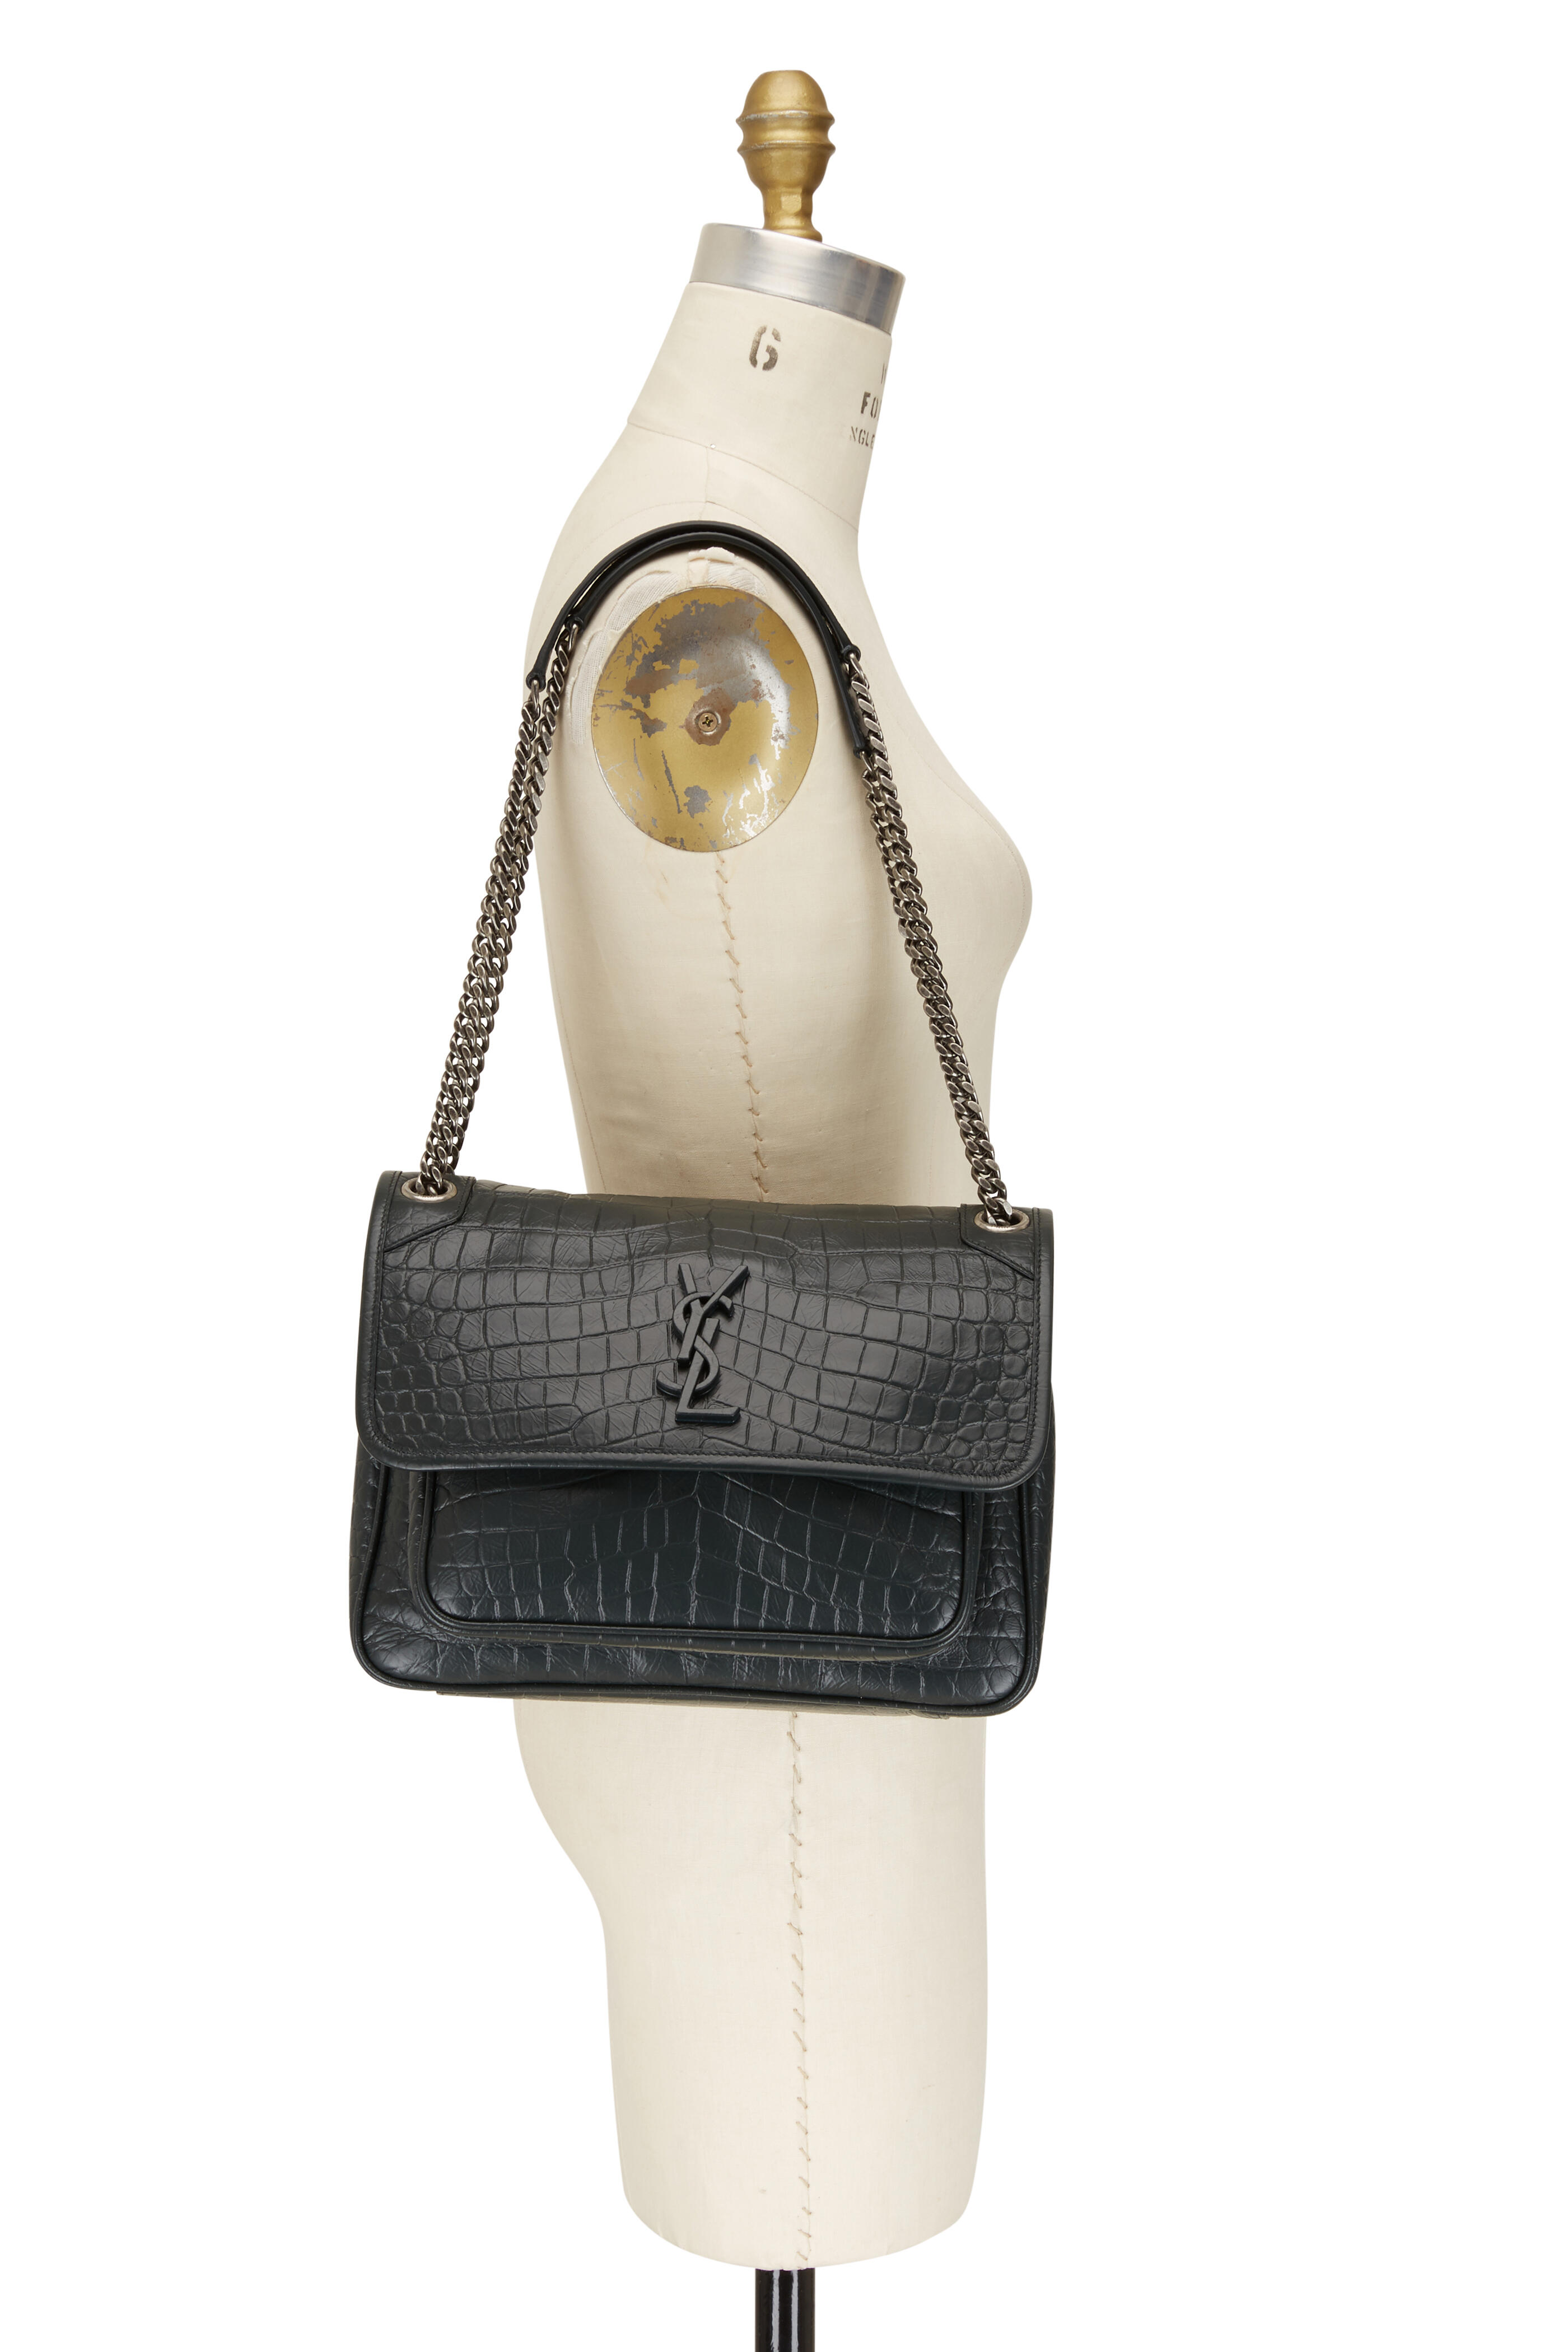 White YSL-logo croc-effect leather clutch bag